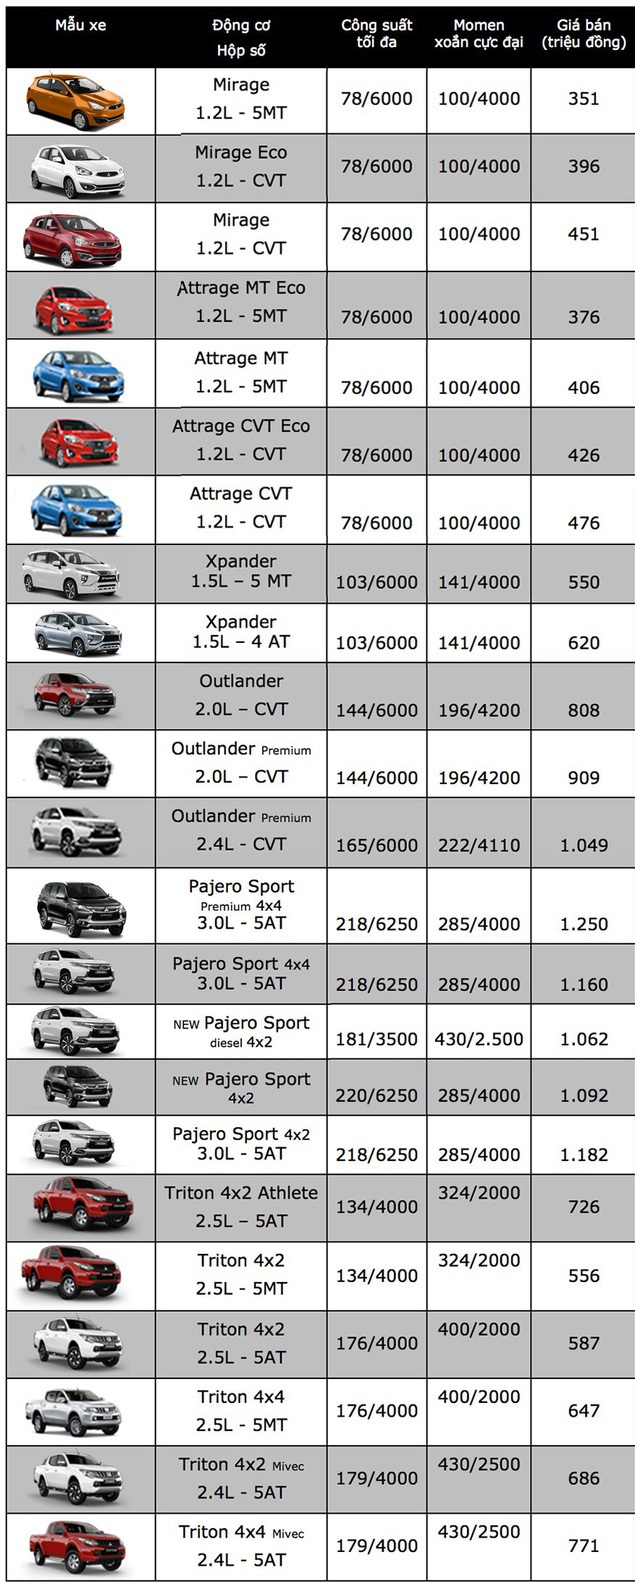 Tin tức - Bảng giá xe Mitsubishi mới nhất tháng 11/2018: Mirage phiên bản MT giá chỉ 350,5 triệu đồng (Hình 2).